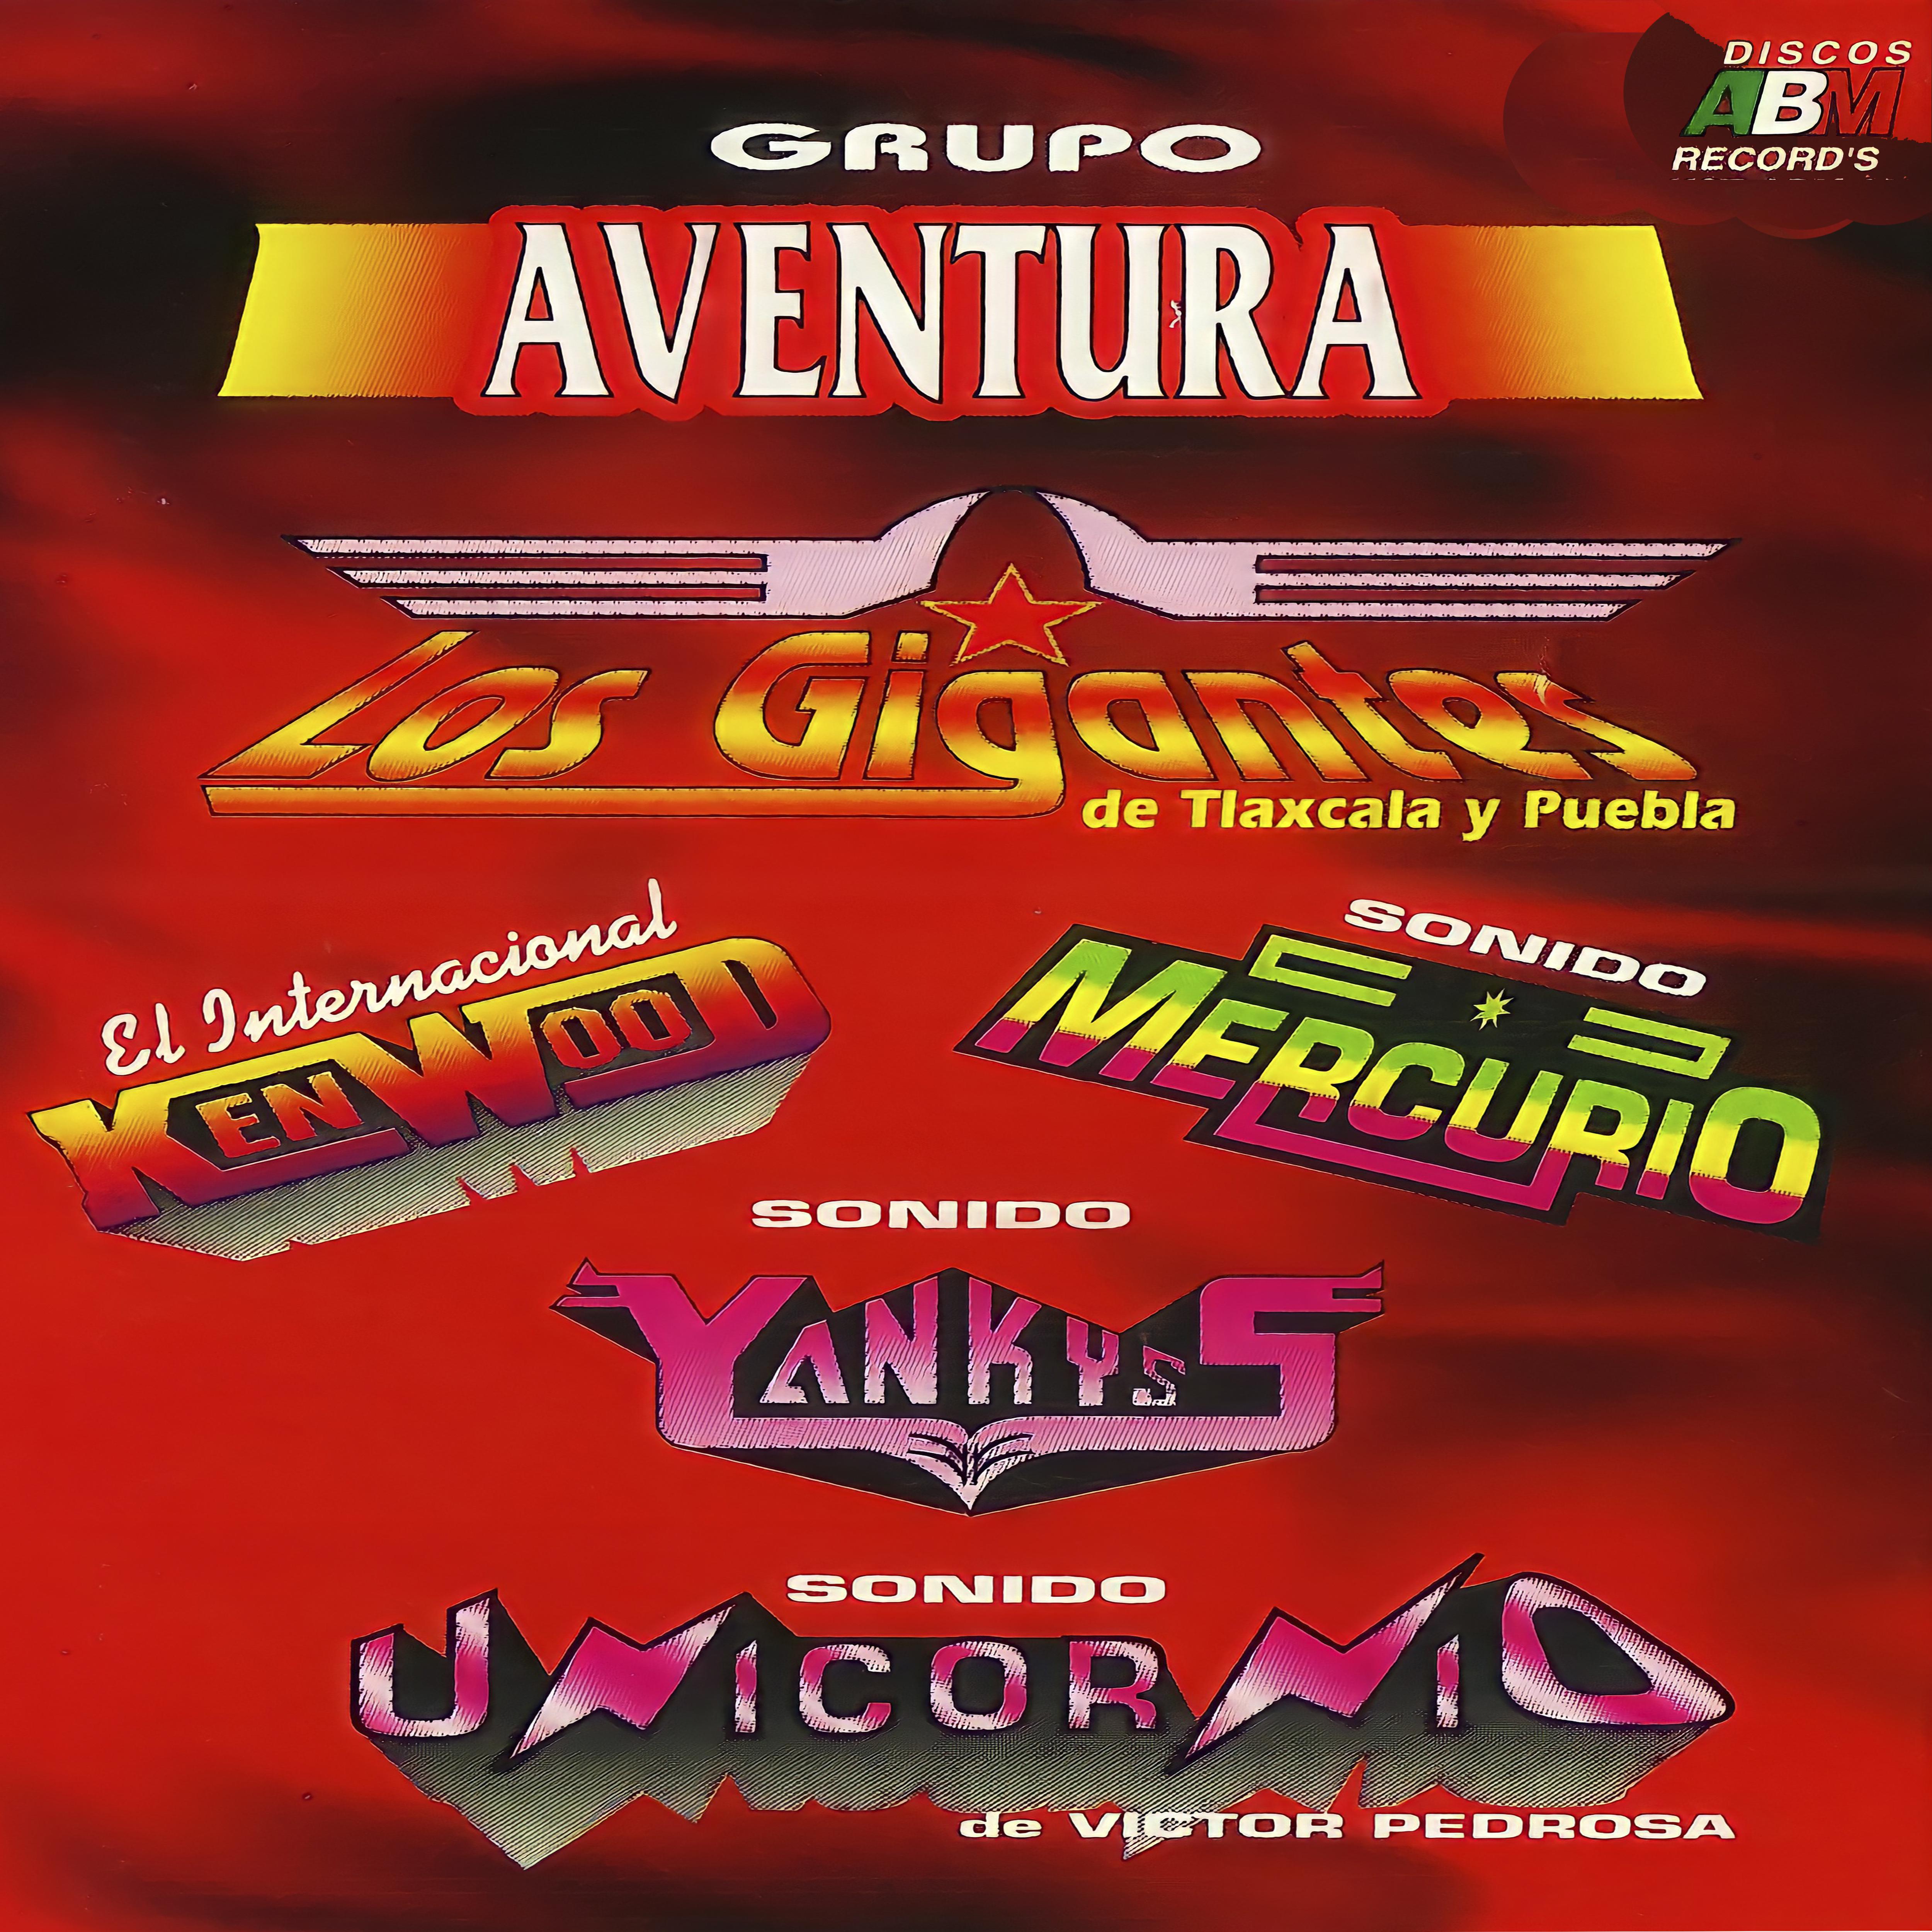 Постер альбома Los Gigantes de Tlaxcala y Puebla, el Internacional Kenwood, Sonido Mercurio, Sonido Yankyss, Sonido Unicornio